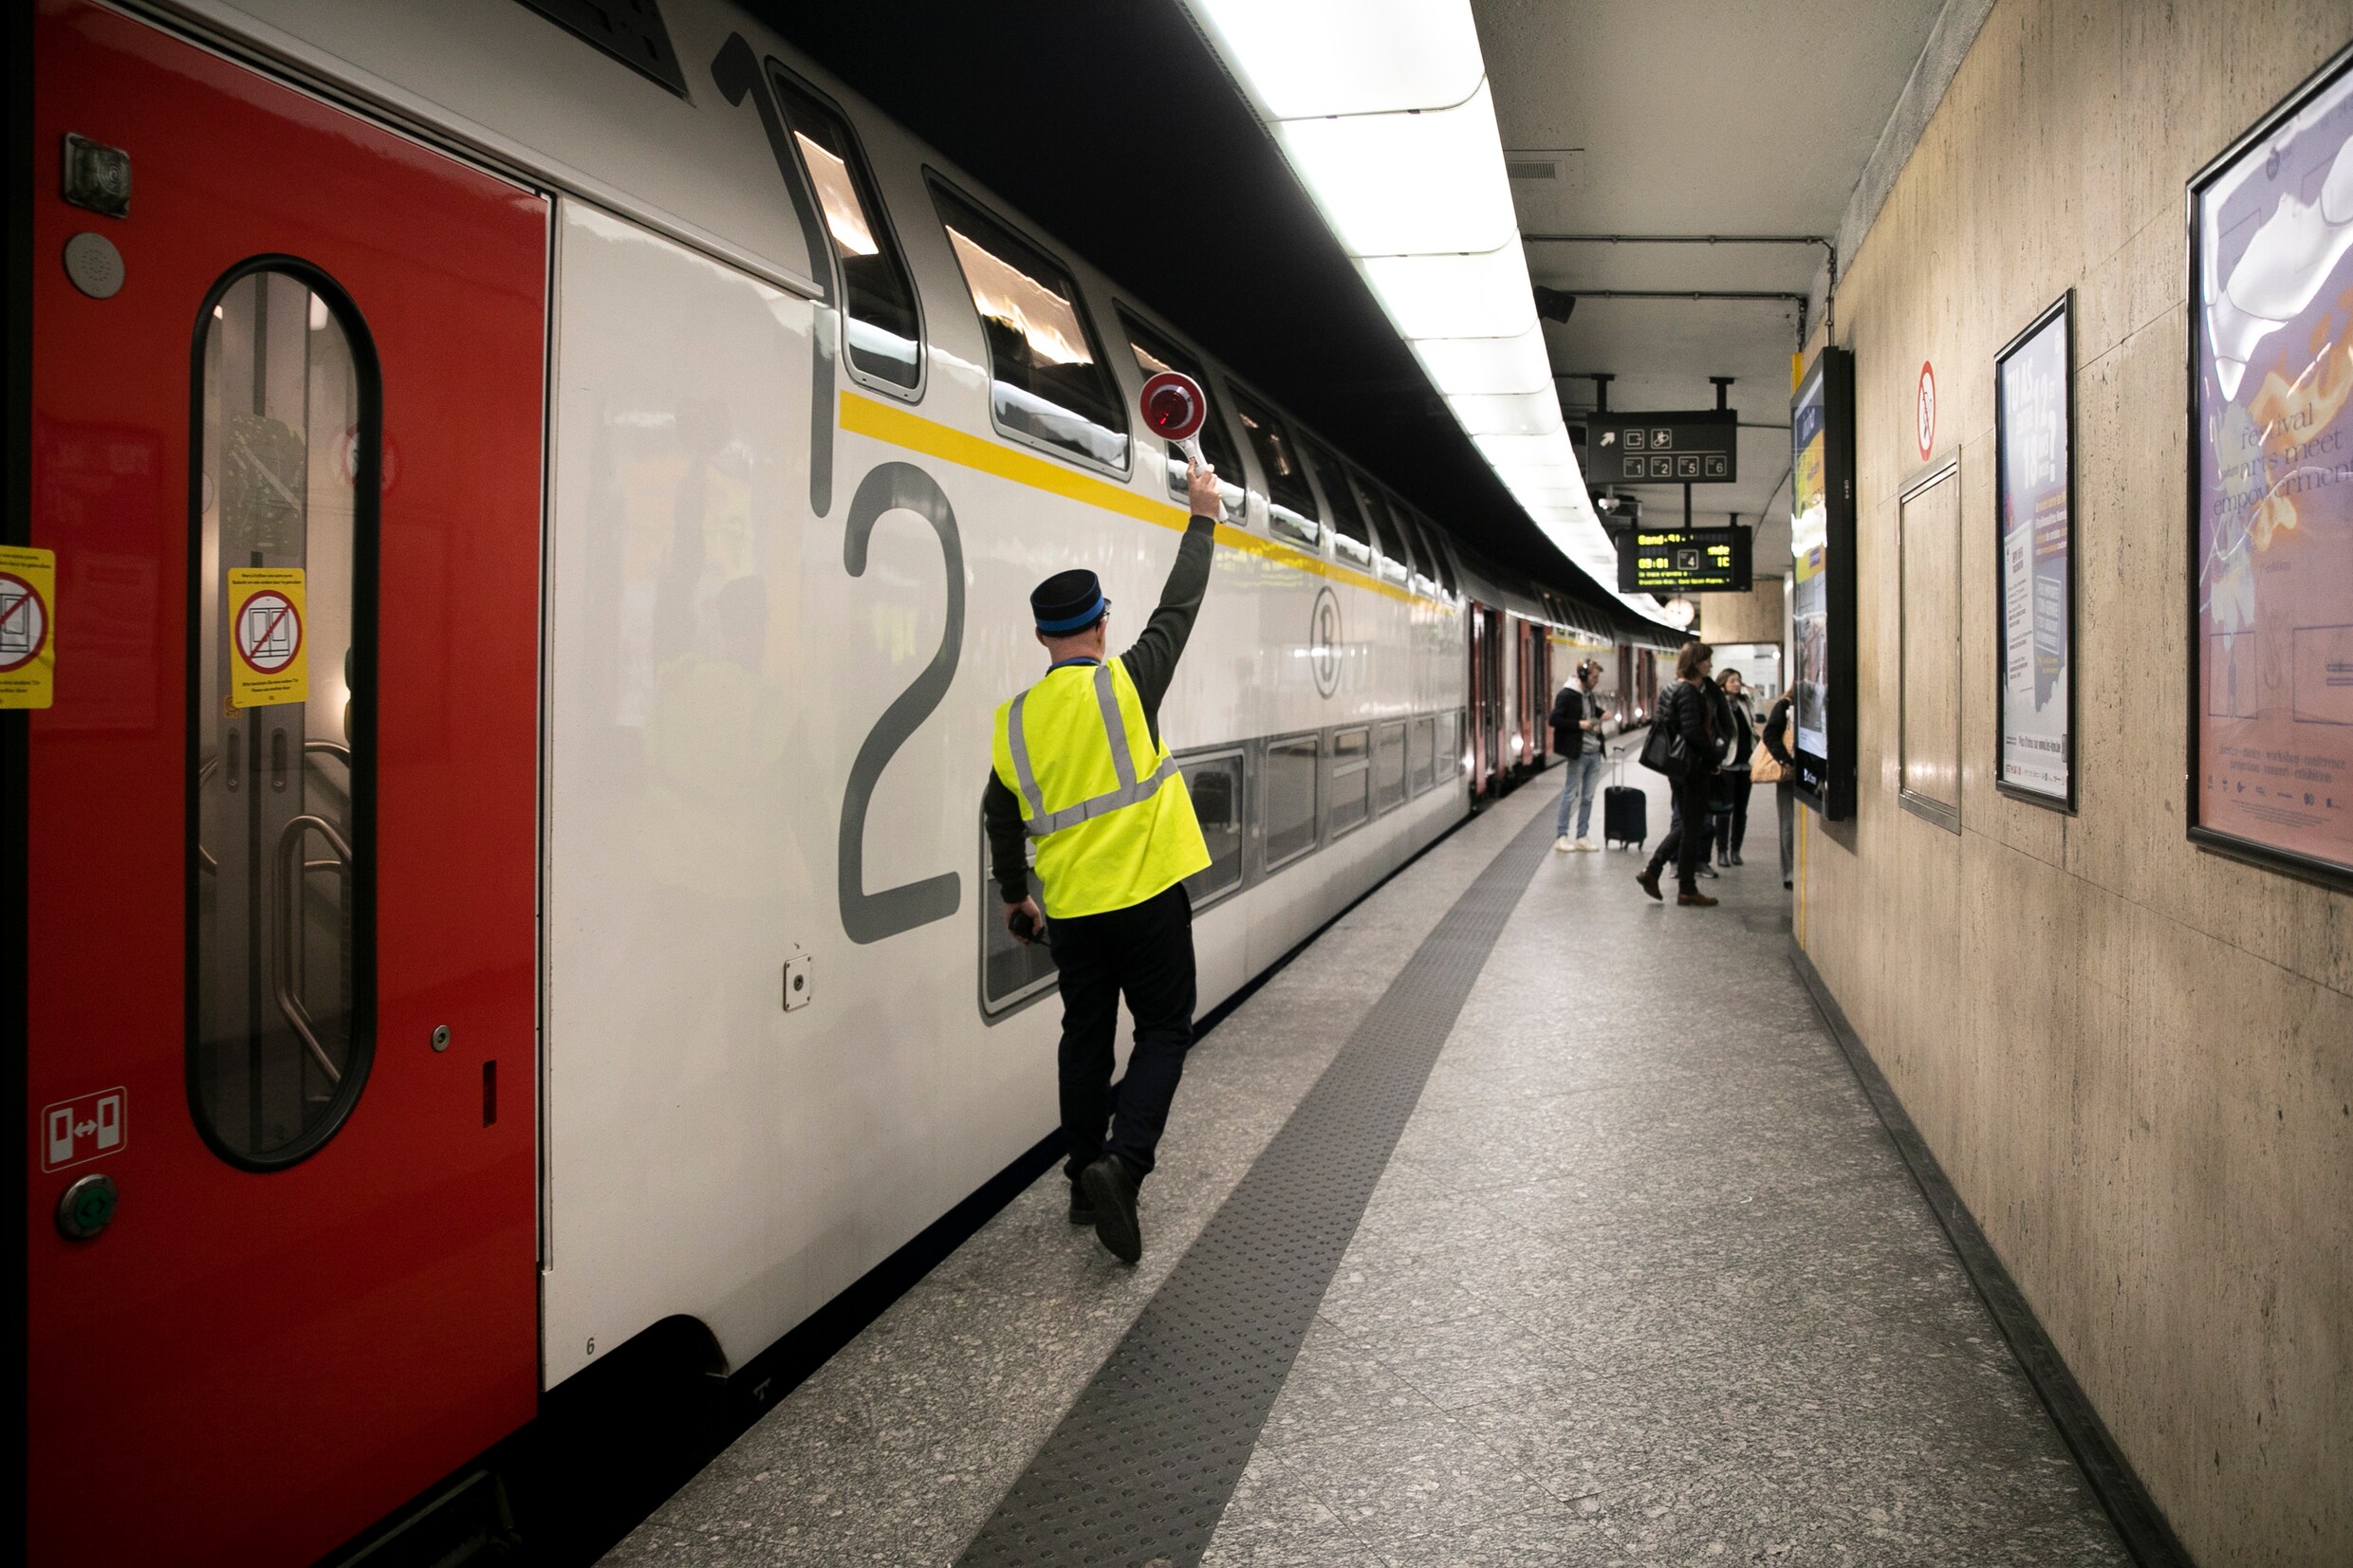 Groepskorting, extra late treinen en minder subsidies bij vertraging: zo ziet de toekomst van de NMBS eruit